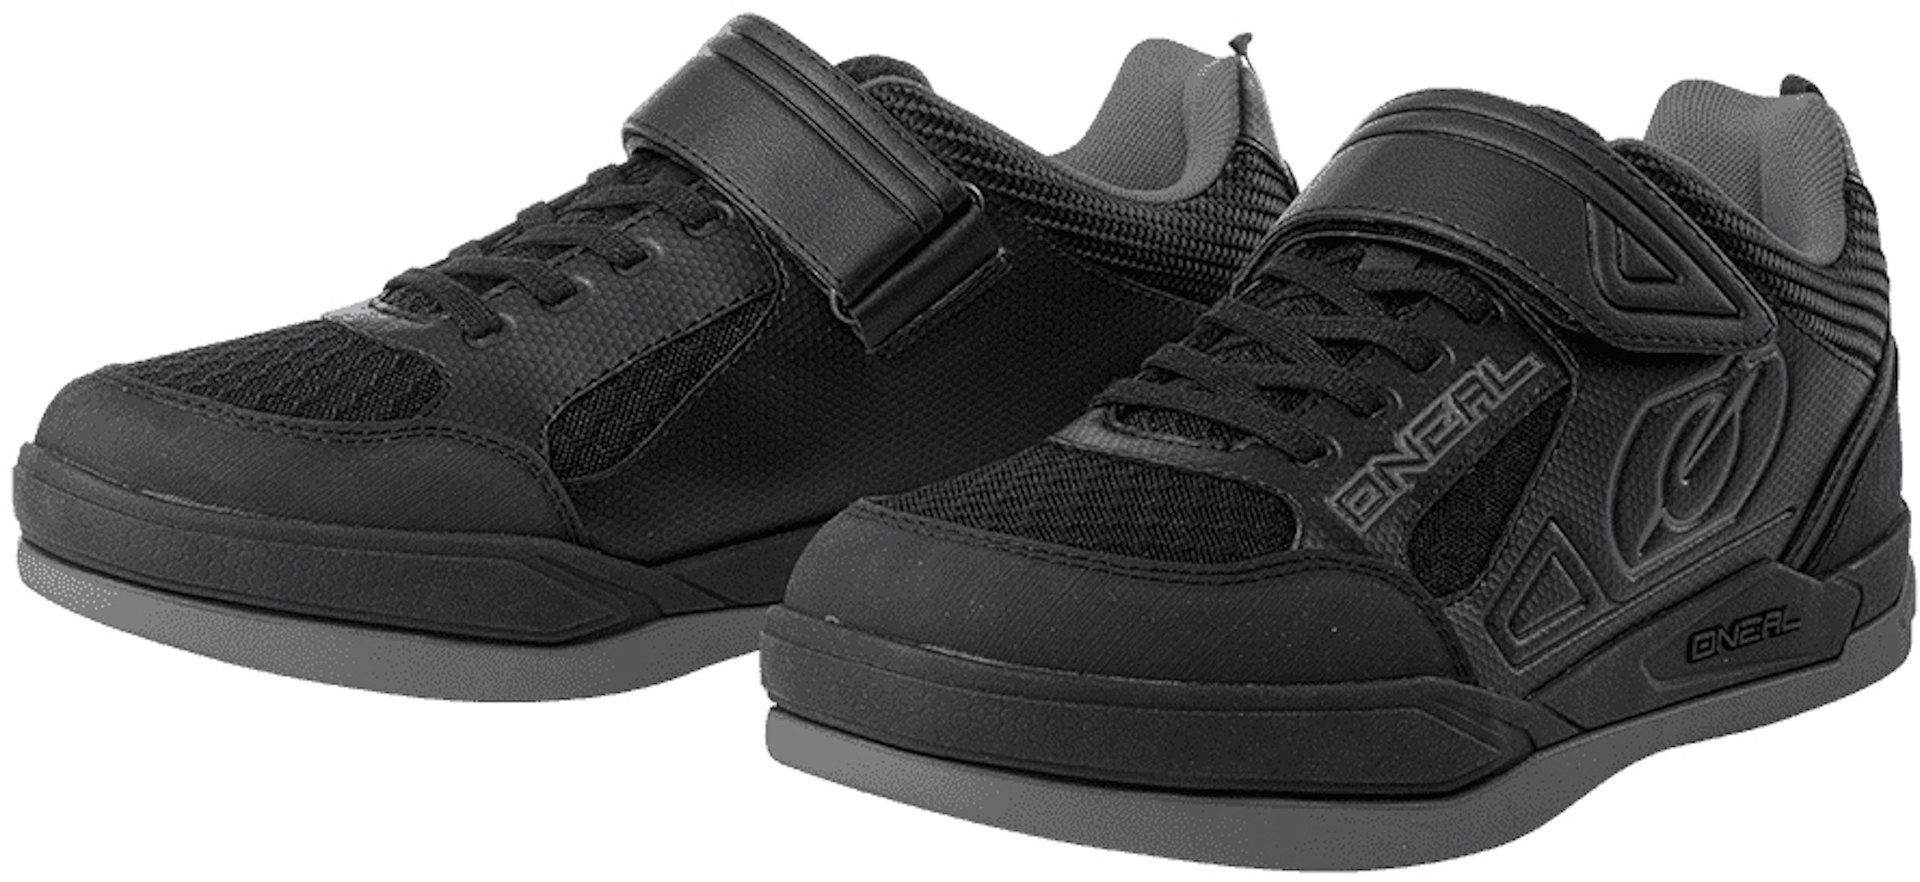 Oneal Sender Flat Schuhe, schwarz-grau, Größe 45, schwarz-grau, Größe 45